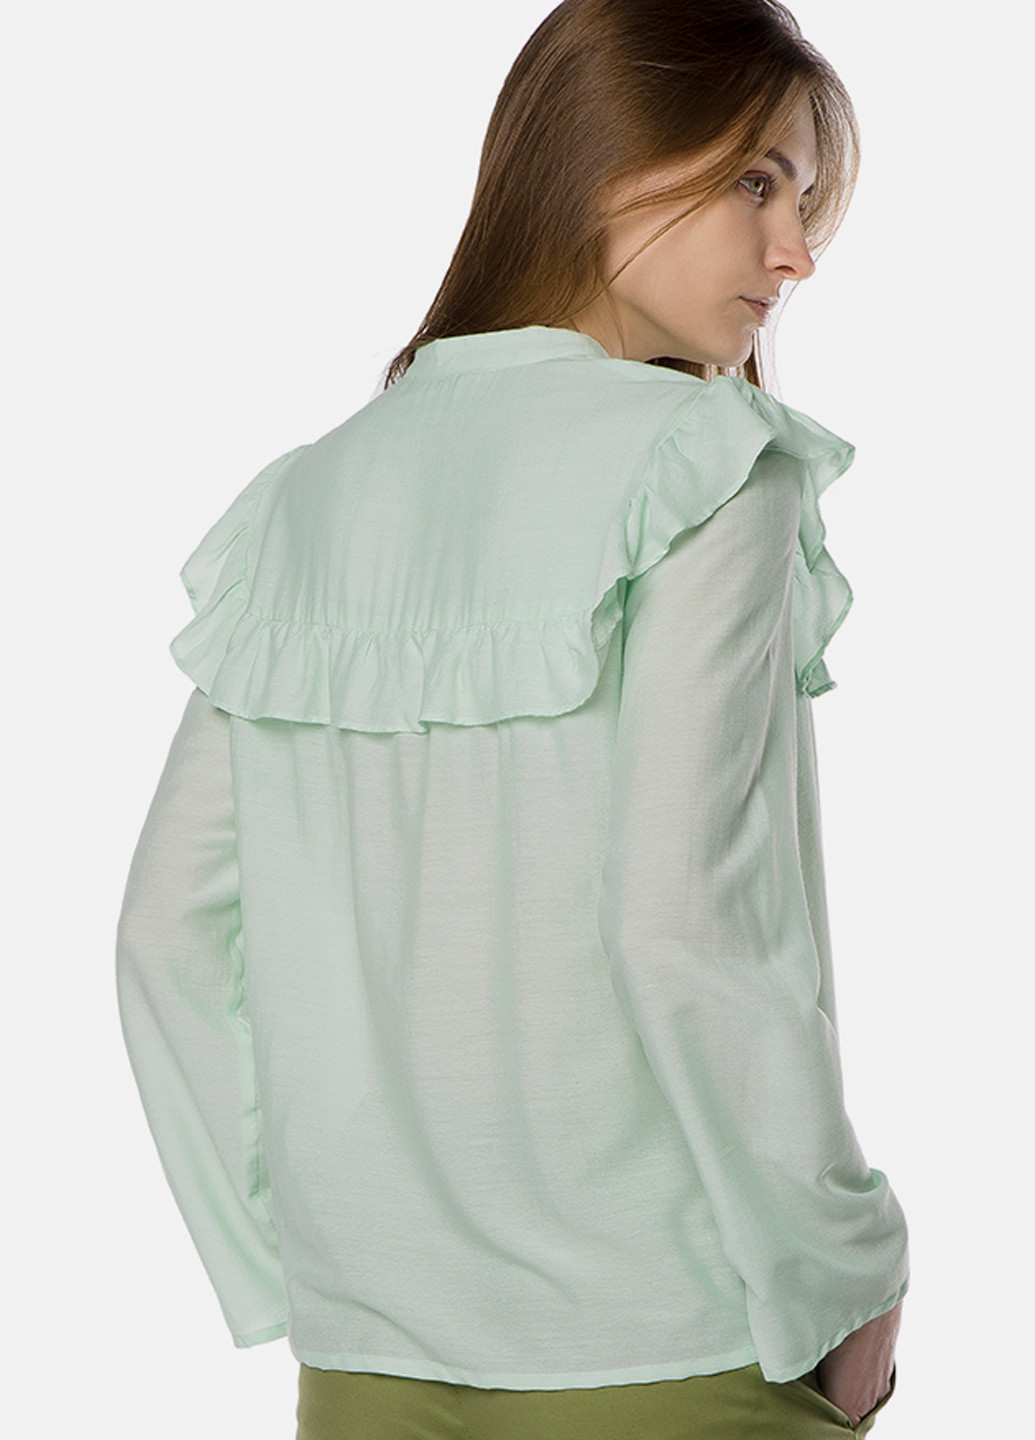 Бледно-зеленая демисезонная блуза MR 520